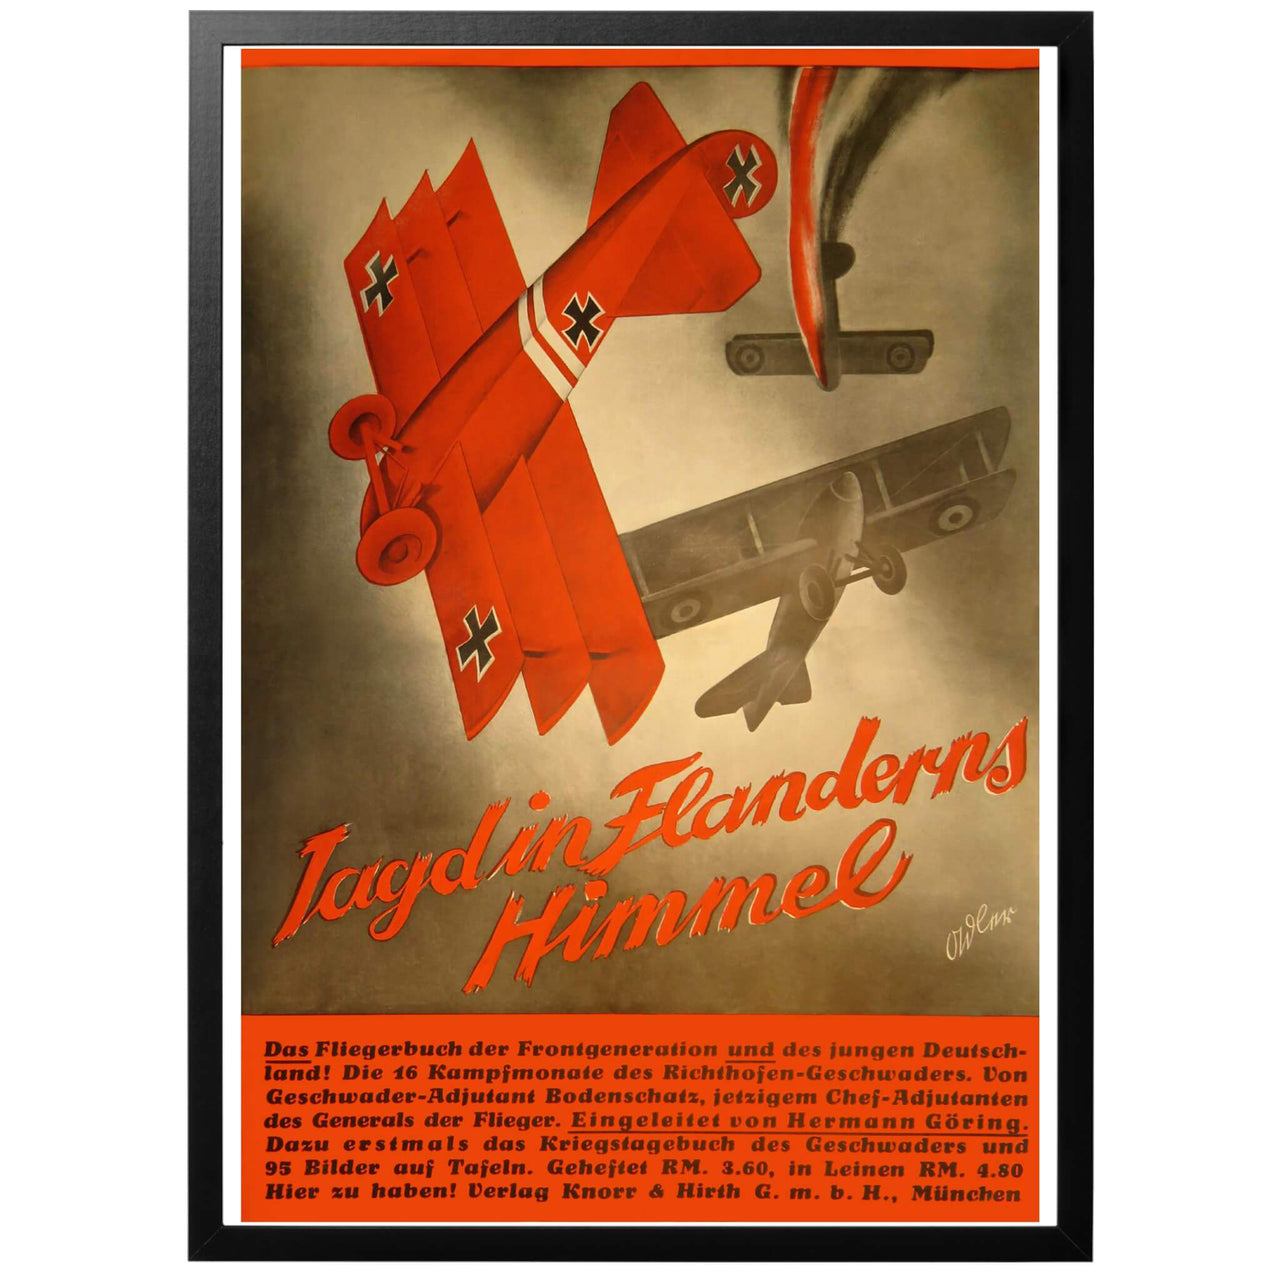 Jagd in Flanderns Himmel - Jakt i skyn över Flandern. Tysk poster från 1935.  En reklamposter för den nya boken "Jagd in Flanderns Himmel" (Jakt i skyarna över Flandern). Affischen föreställer det berömda rödmålade flygplanet av model Fokker Dr.1 tillhörande Friherre Manfred von Richthofen.